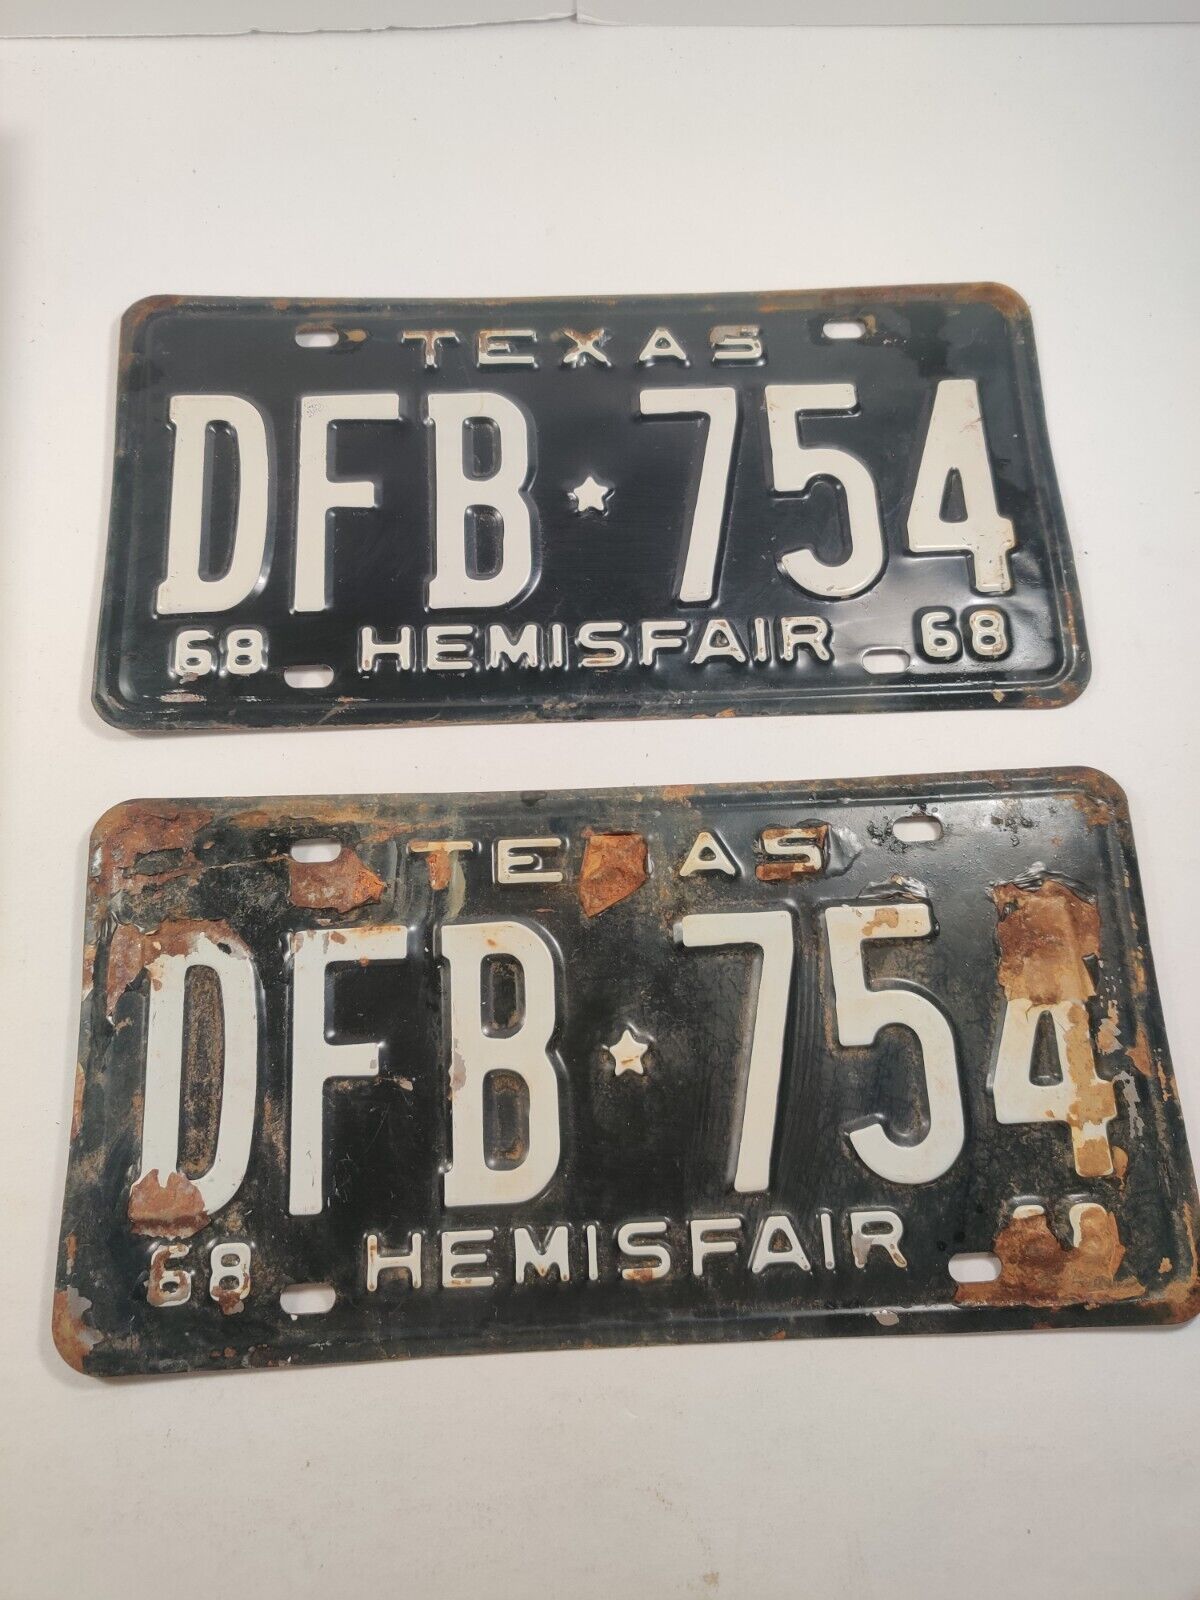 Vintage - 1968 Texas Hemisfair License Plates Set - DFB 754 Pair Tags